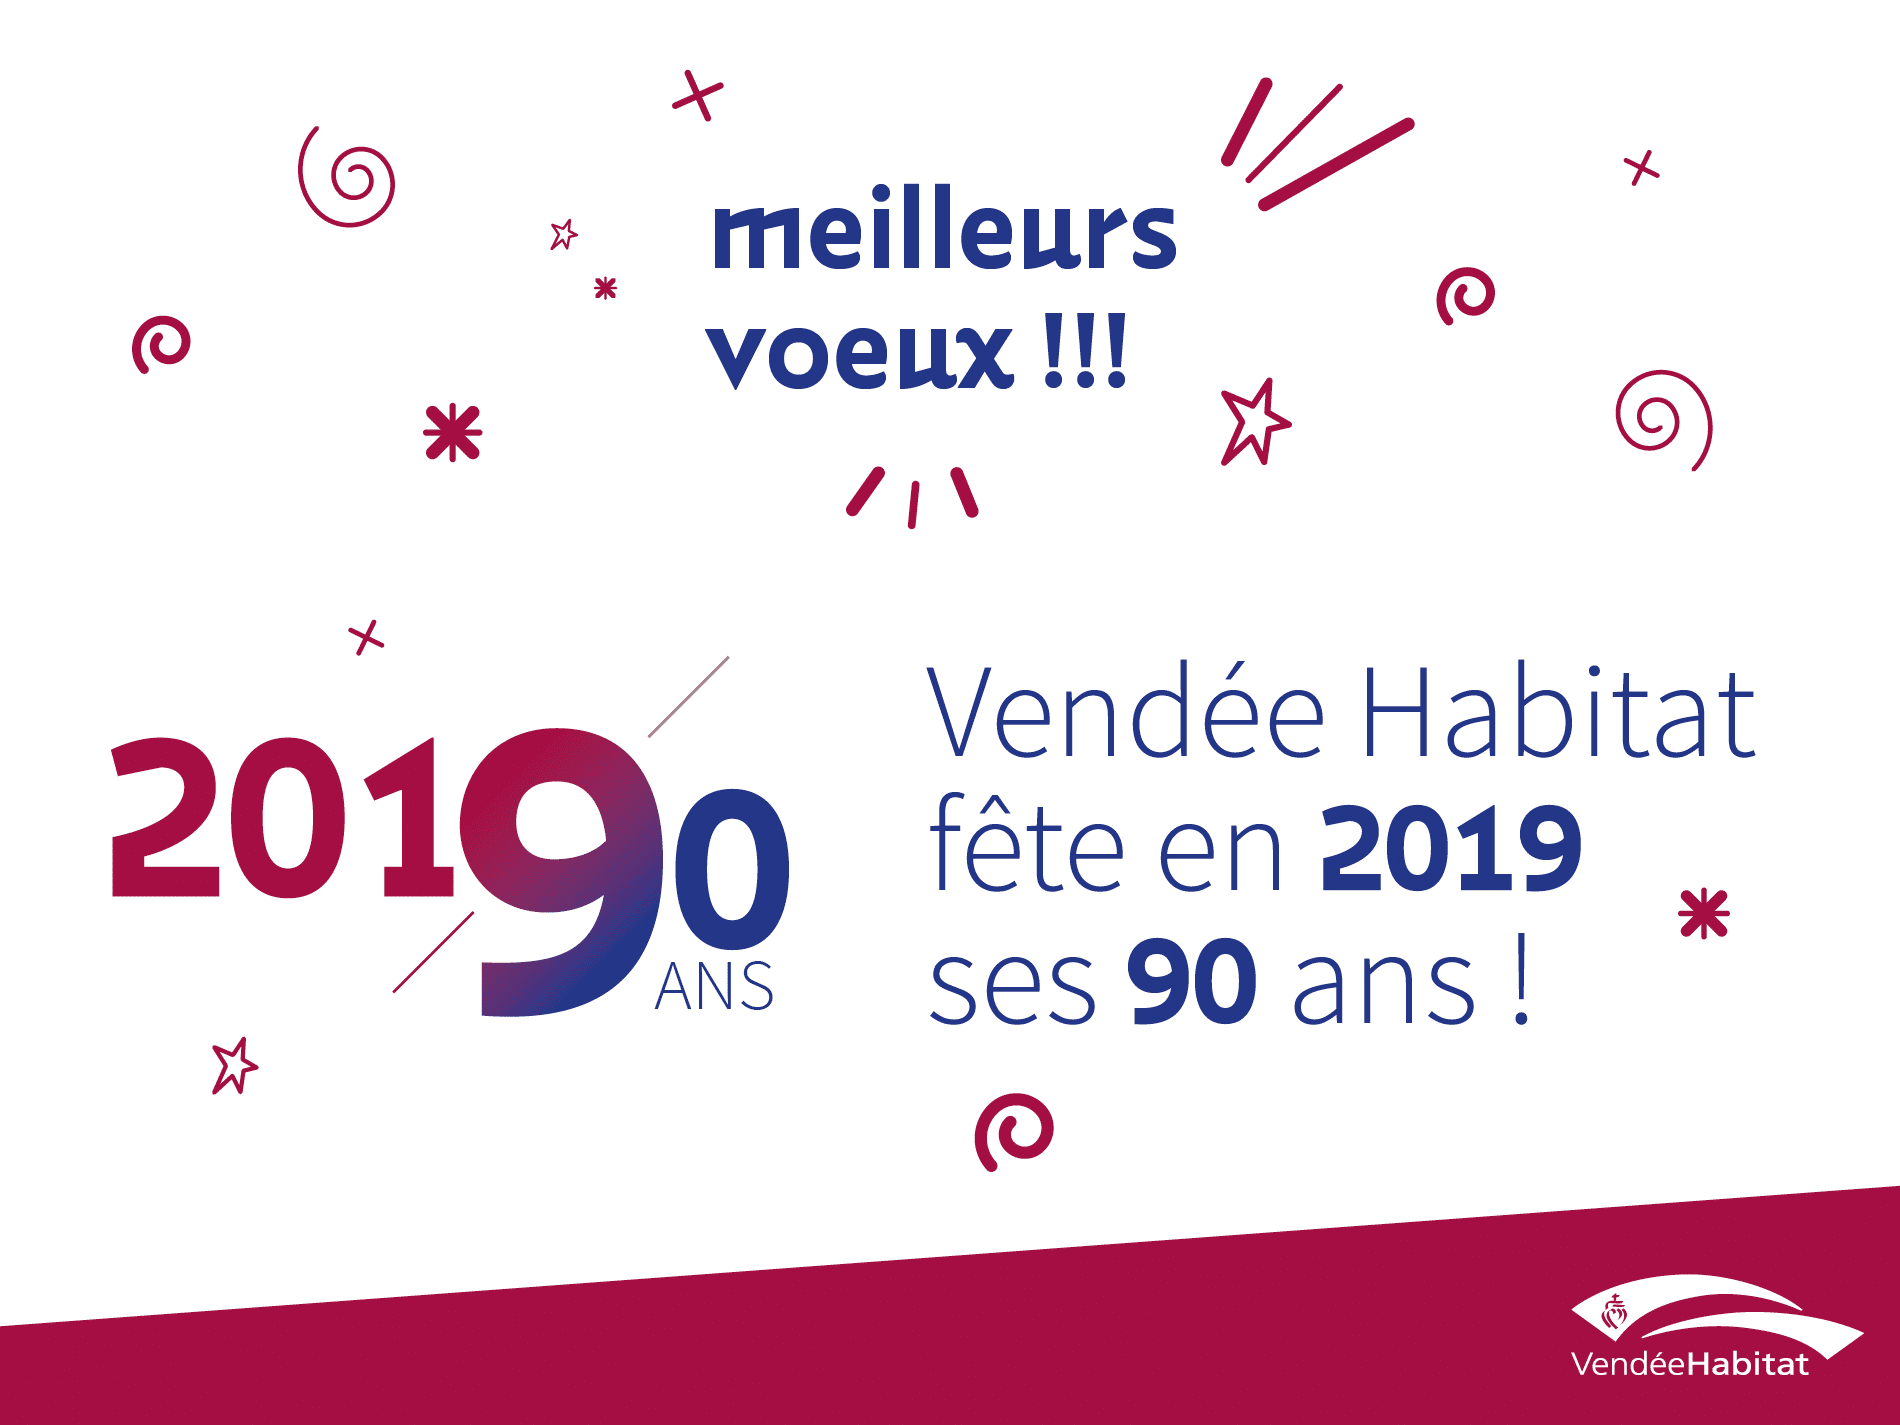 Vendée Habitat vous présente ses meilleurs voeux 2019